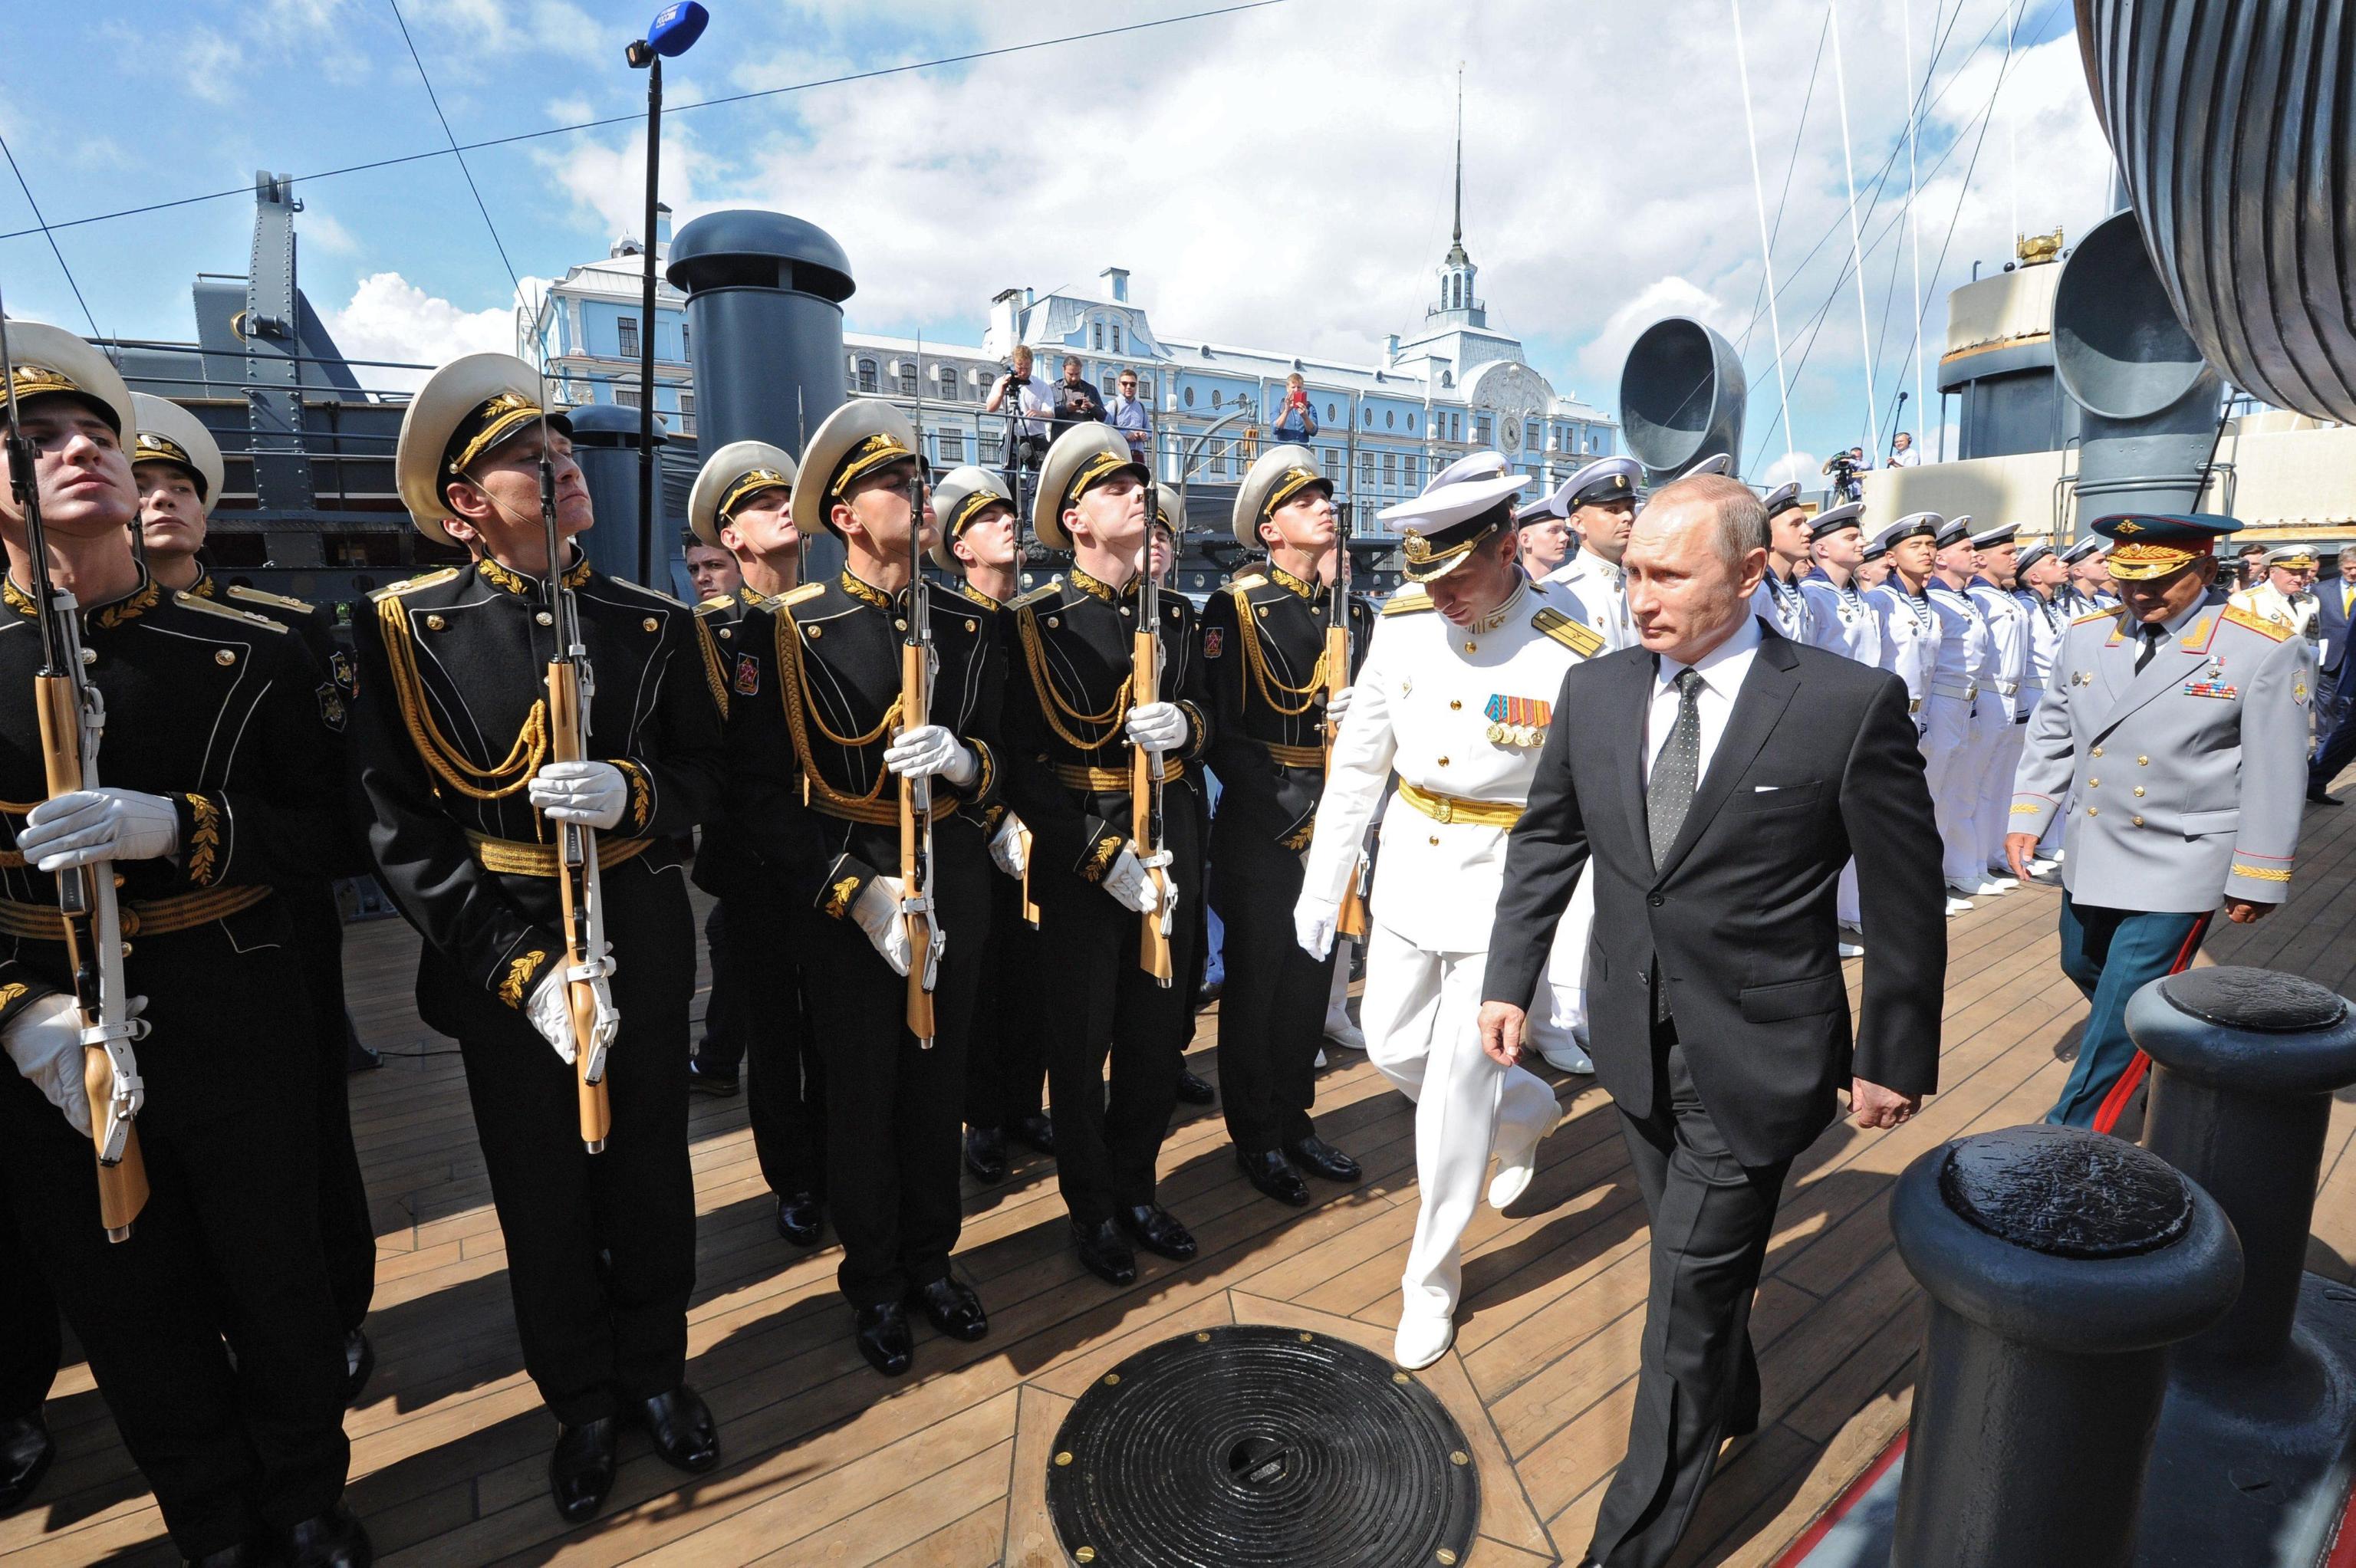 На корабле было 25 человек. Парад военных кораблей день ВМФ В Санкт-Петербурге. Подводная лодка на параде ВМФ.